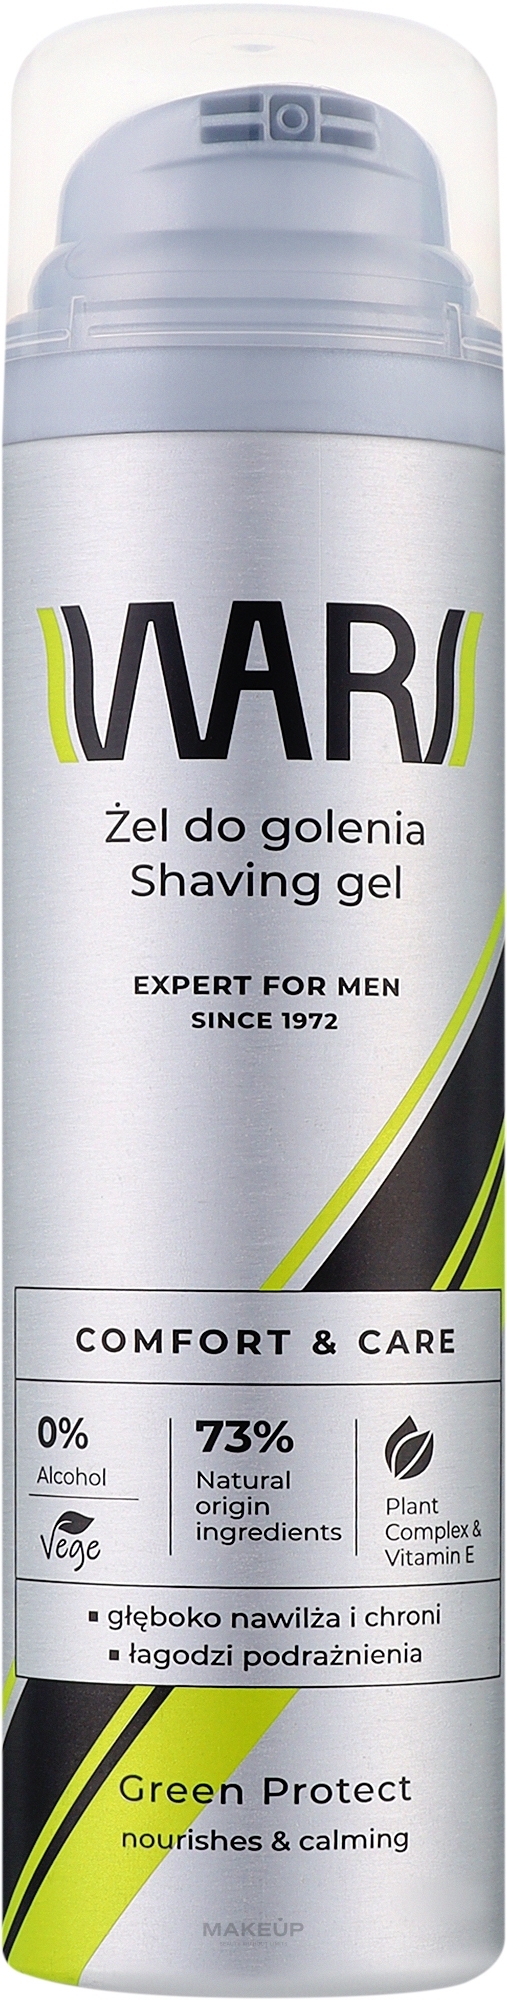 Żel do golenia dla mężczyzn z witaminą E - Wars Expert For Men  — Zdjęcie 200 ml